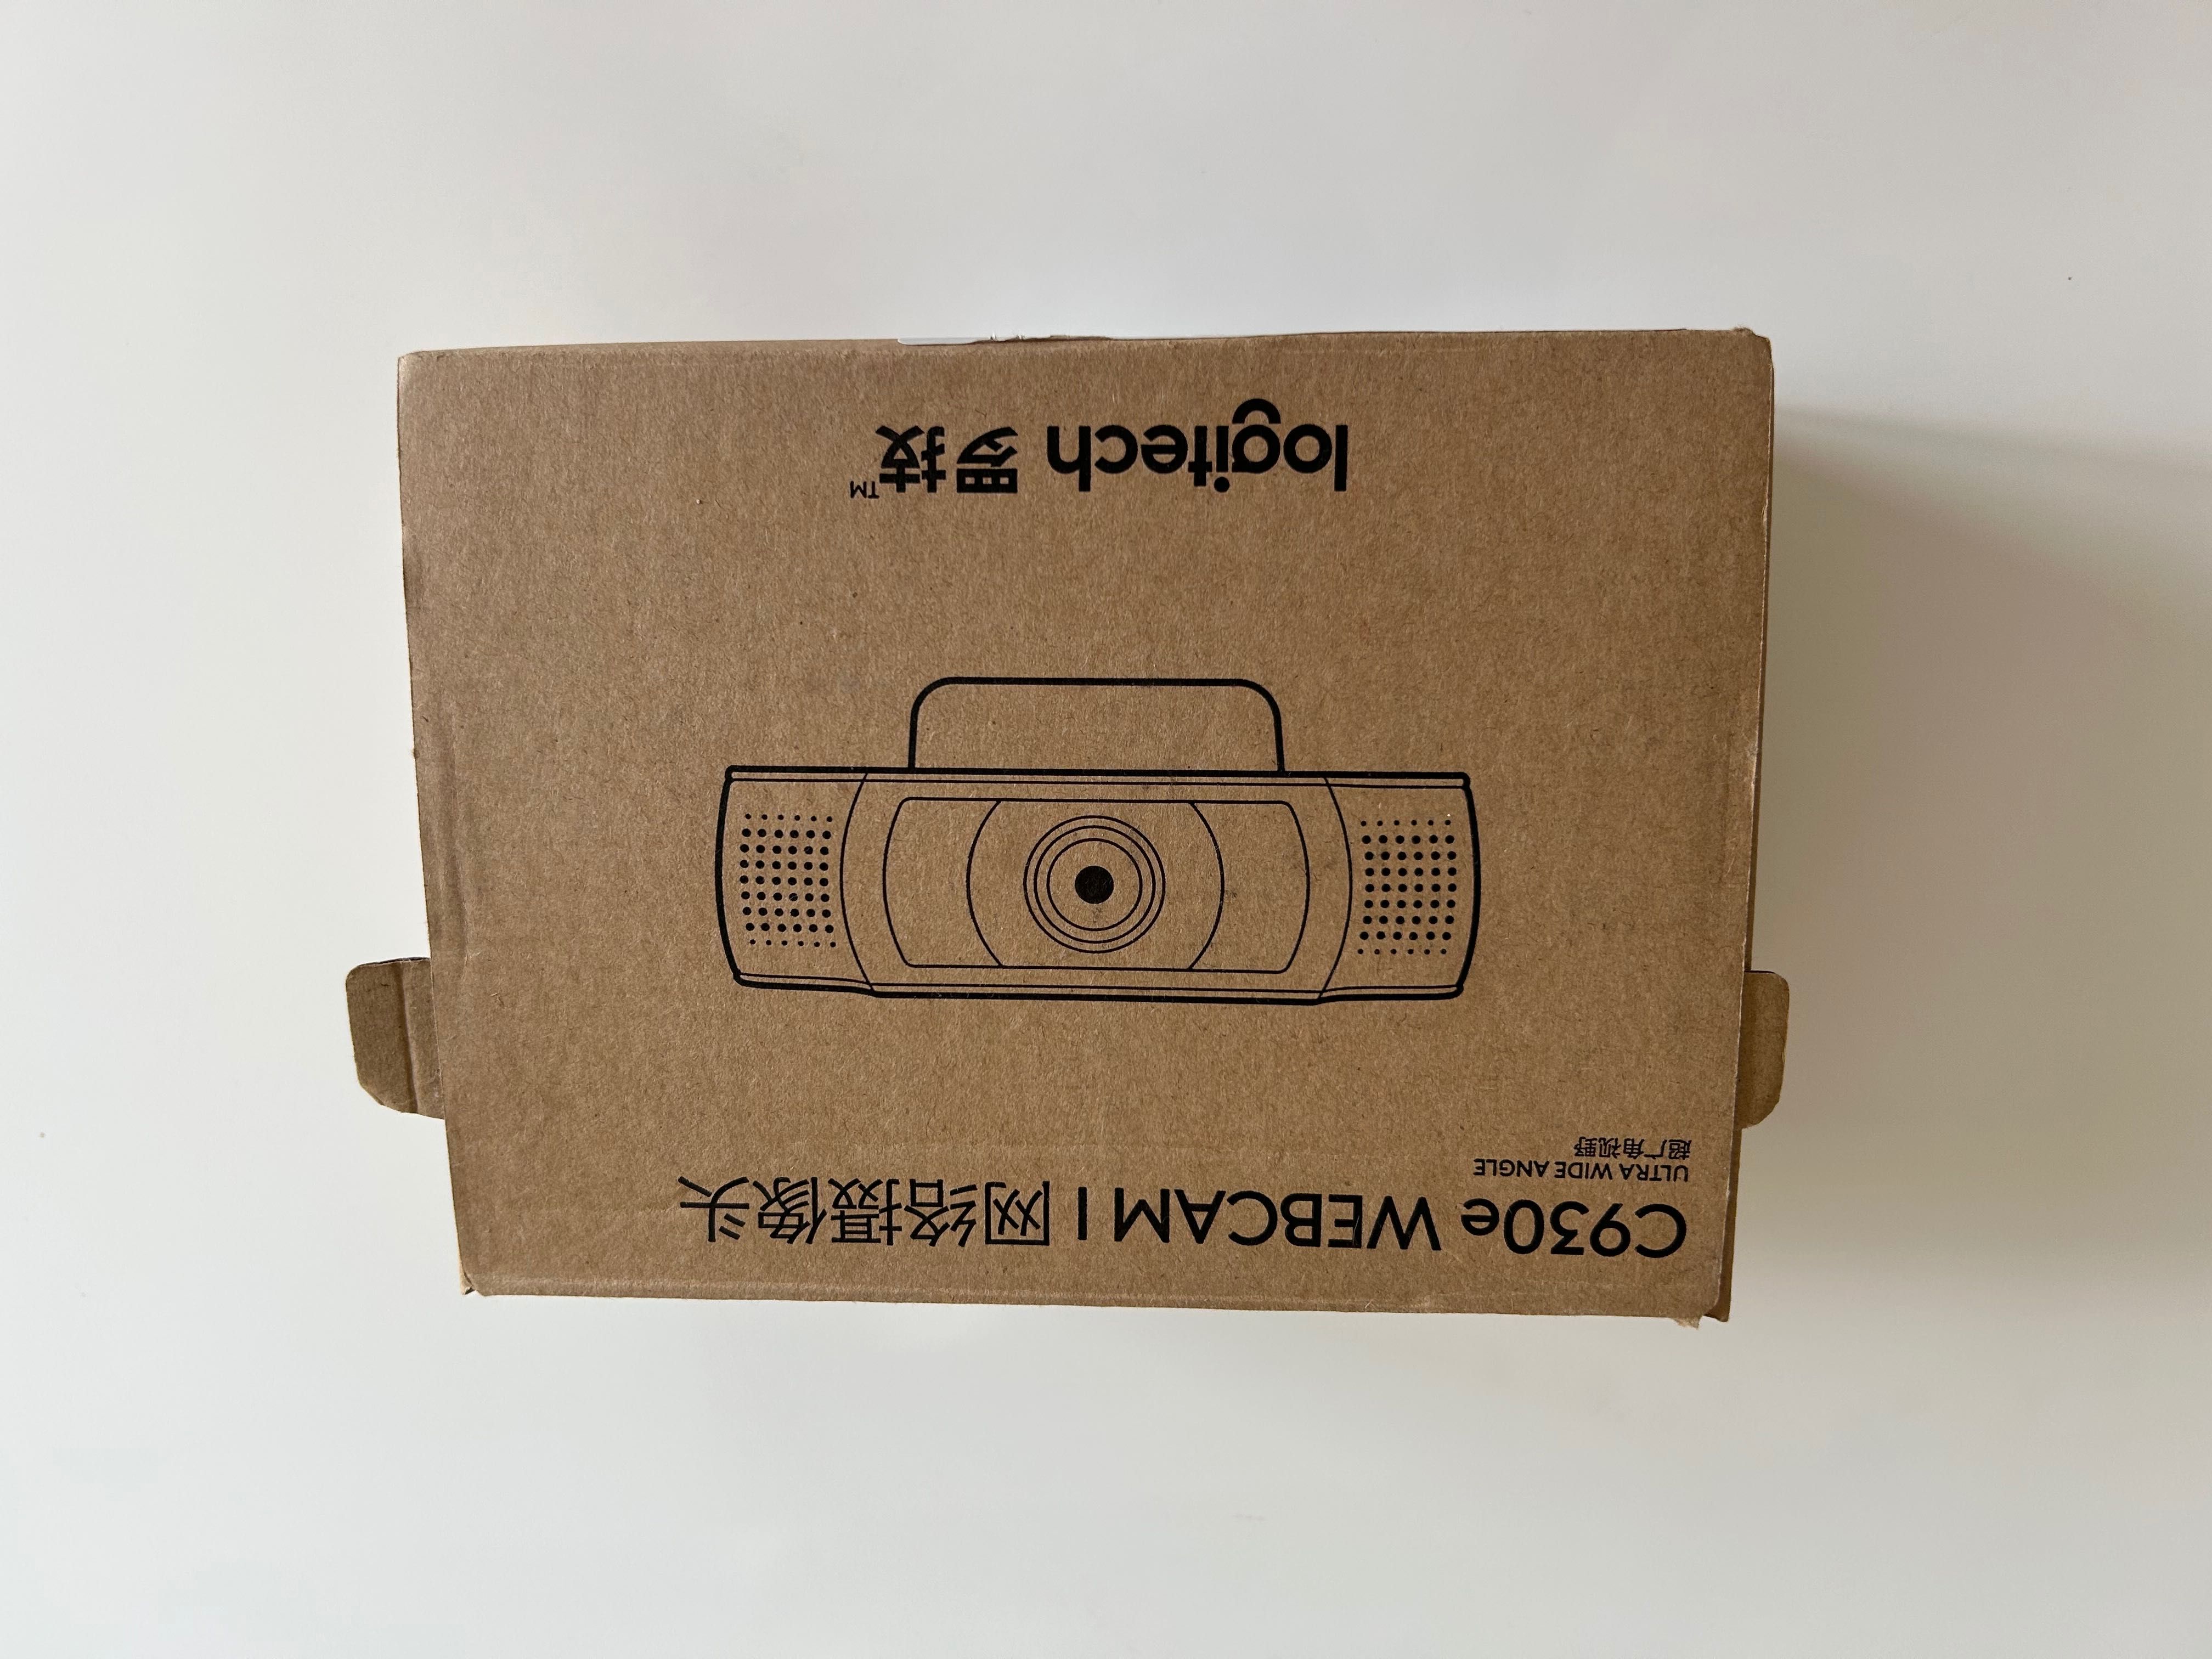 De vanzare C930e webcam